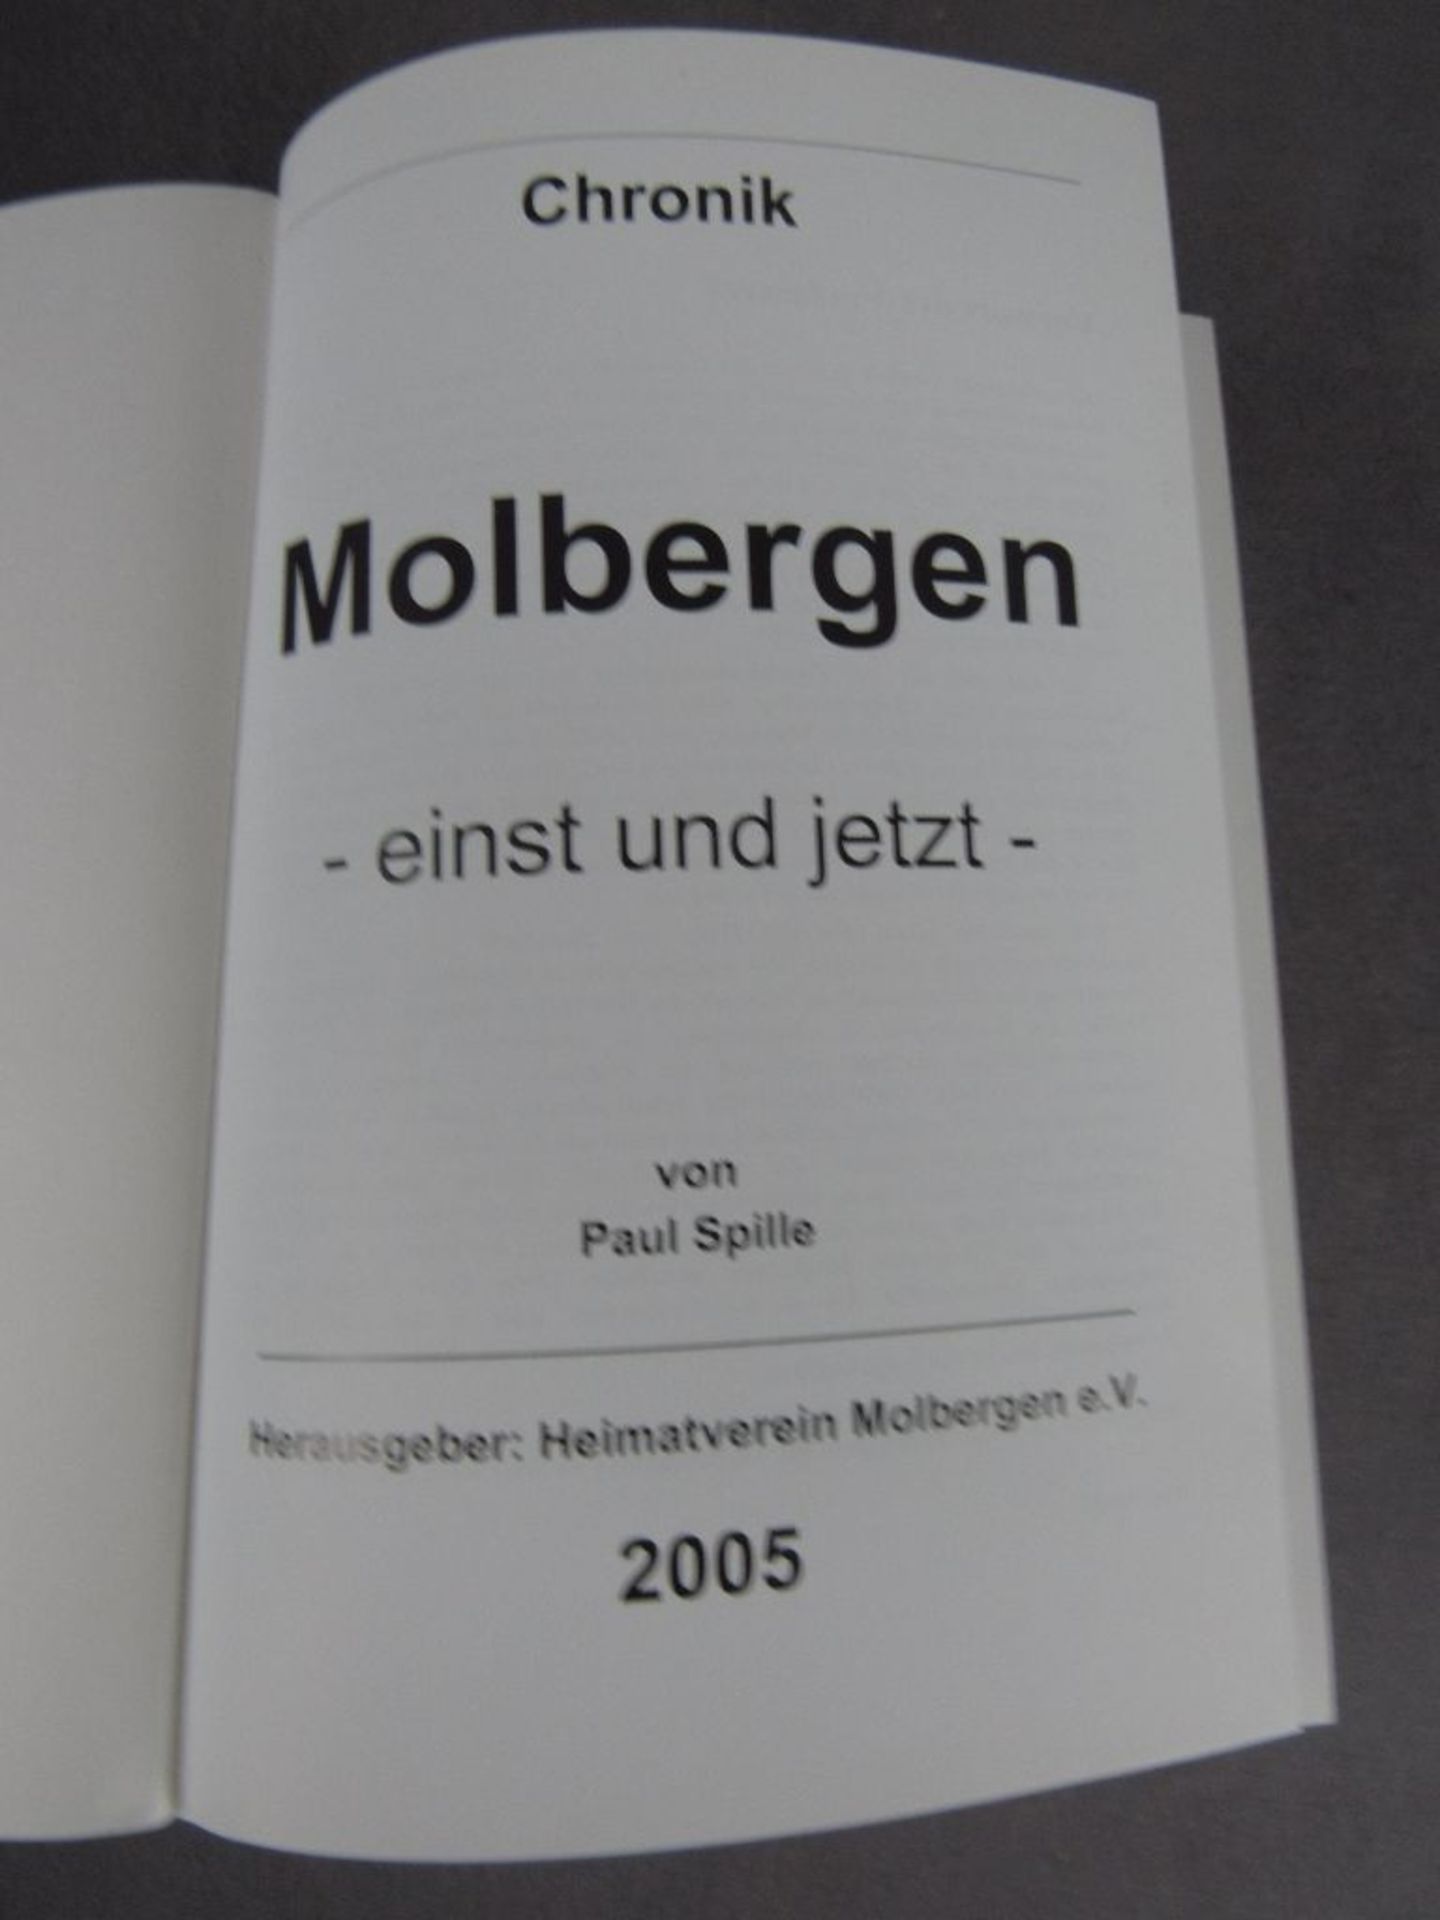 Chronik Molbergen/CLP von 2005 1000 Seiten - Image 4 of 4